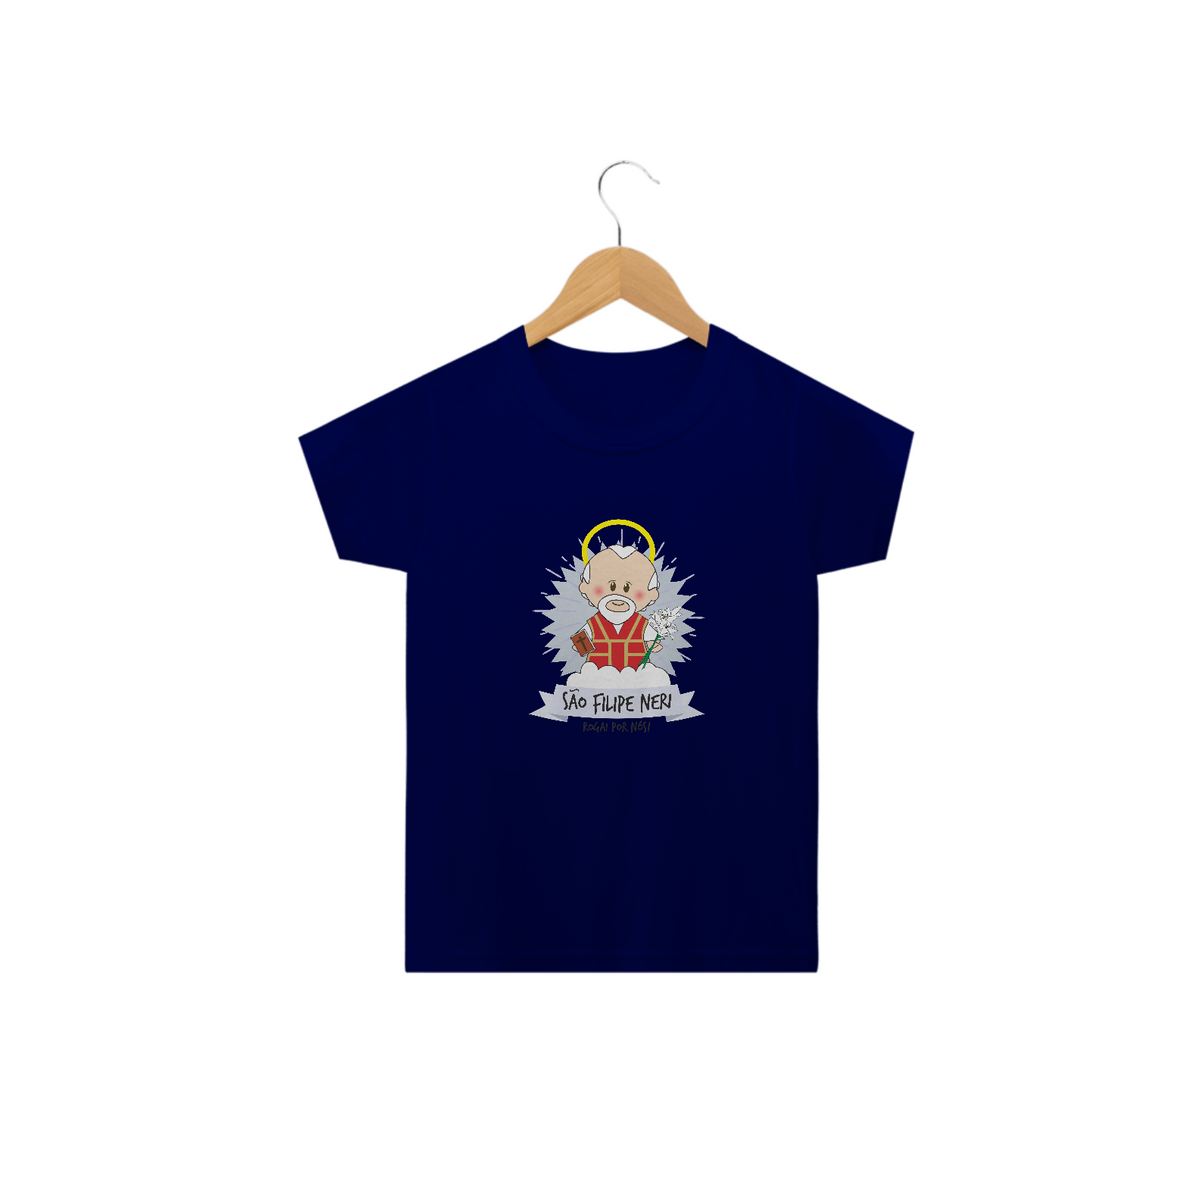 Nome do produto: Camiseta Infantil Coleção Santinhos São Filipe Neri